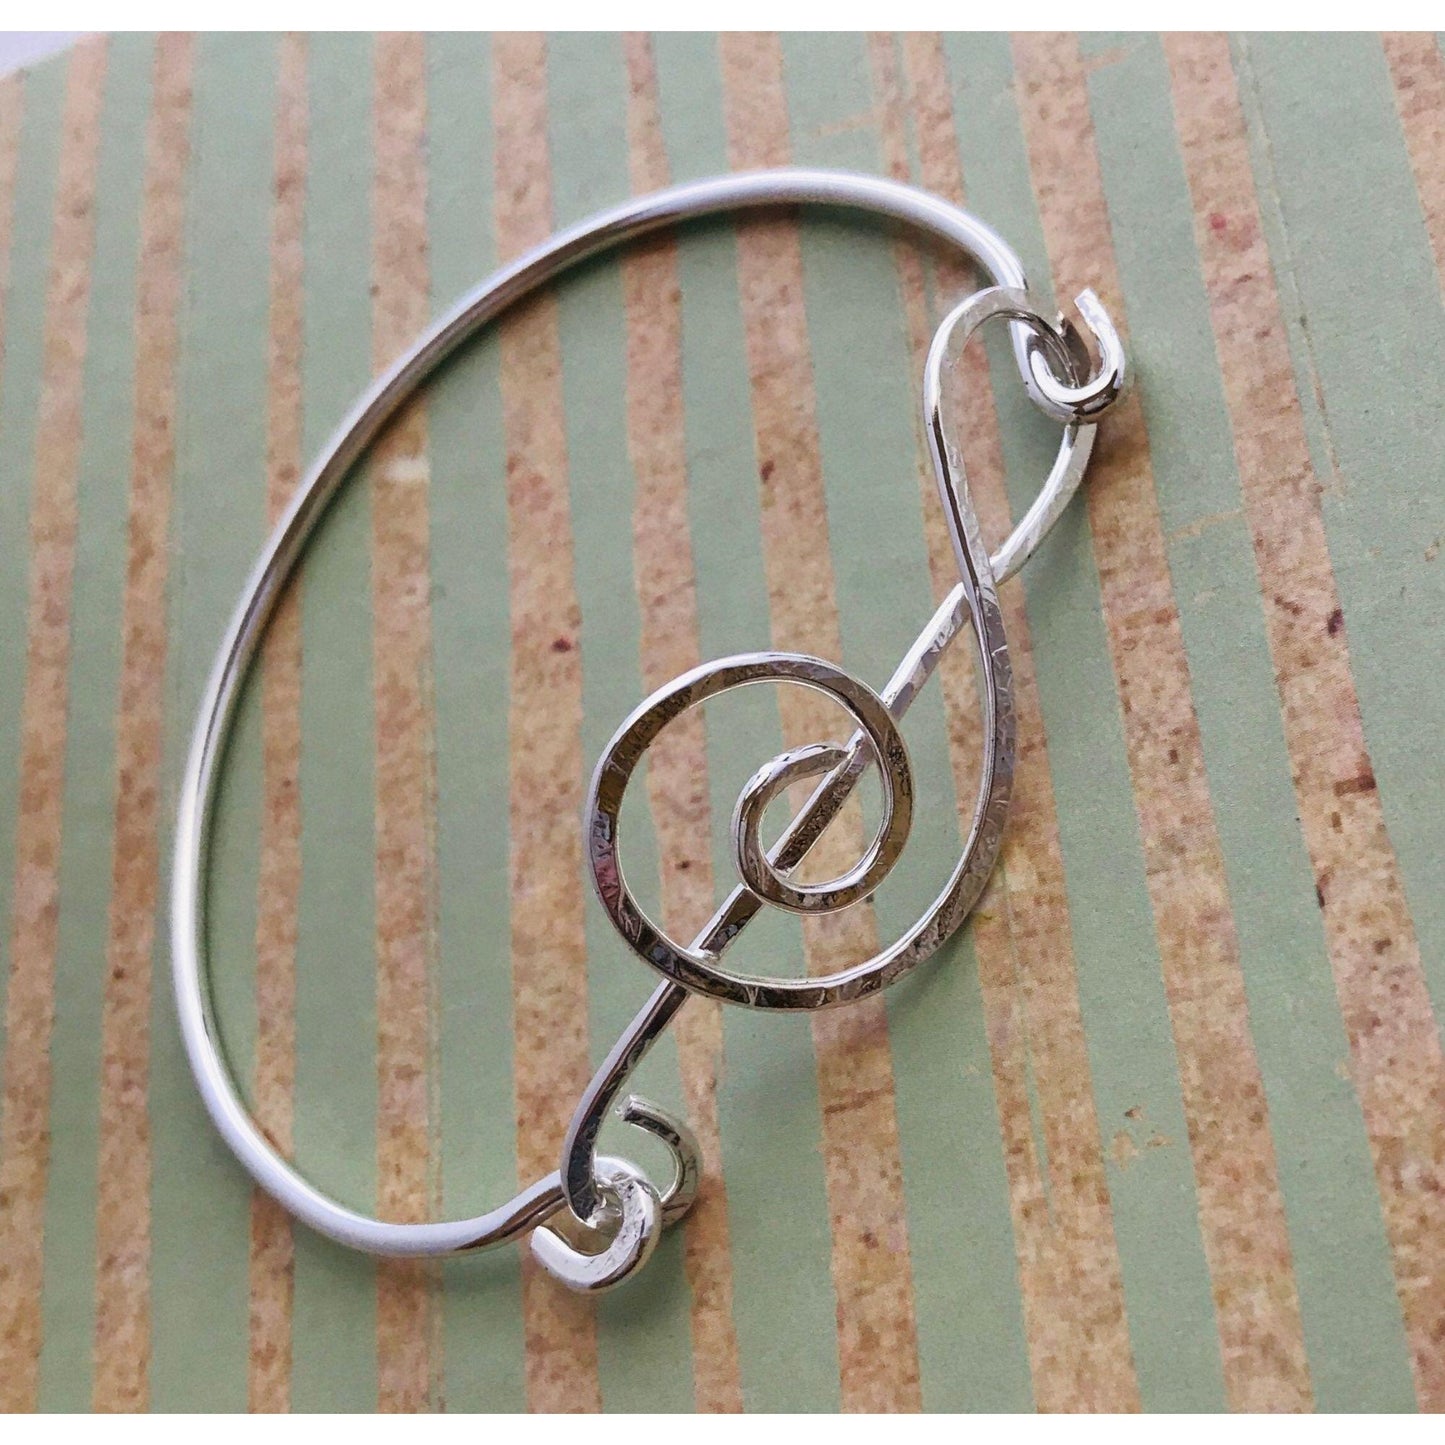 Treble Clef Bracelet,  Musical Note Bangle Bracelet, Gift for Musician Teacher